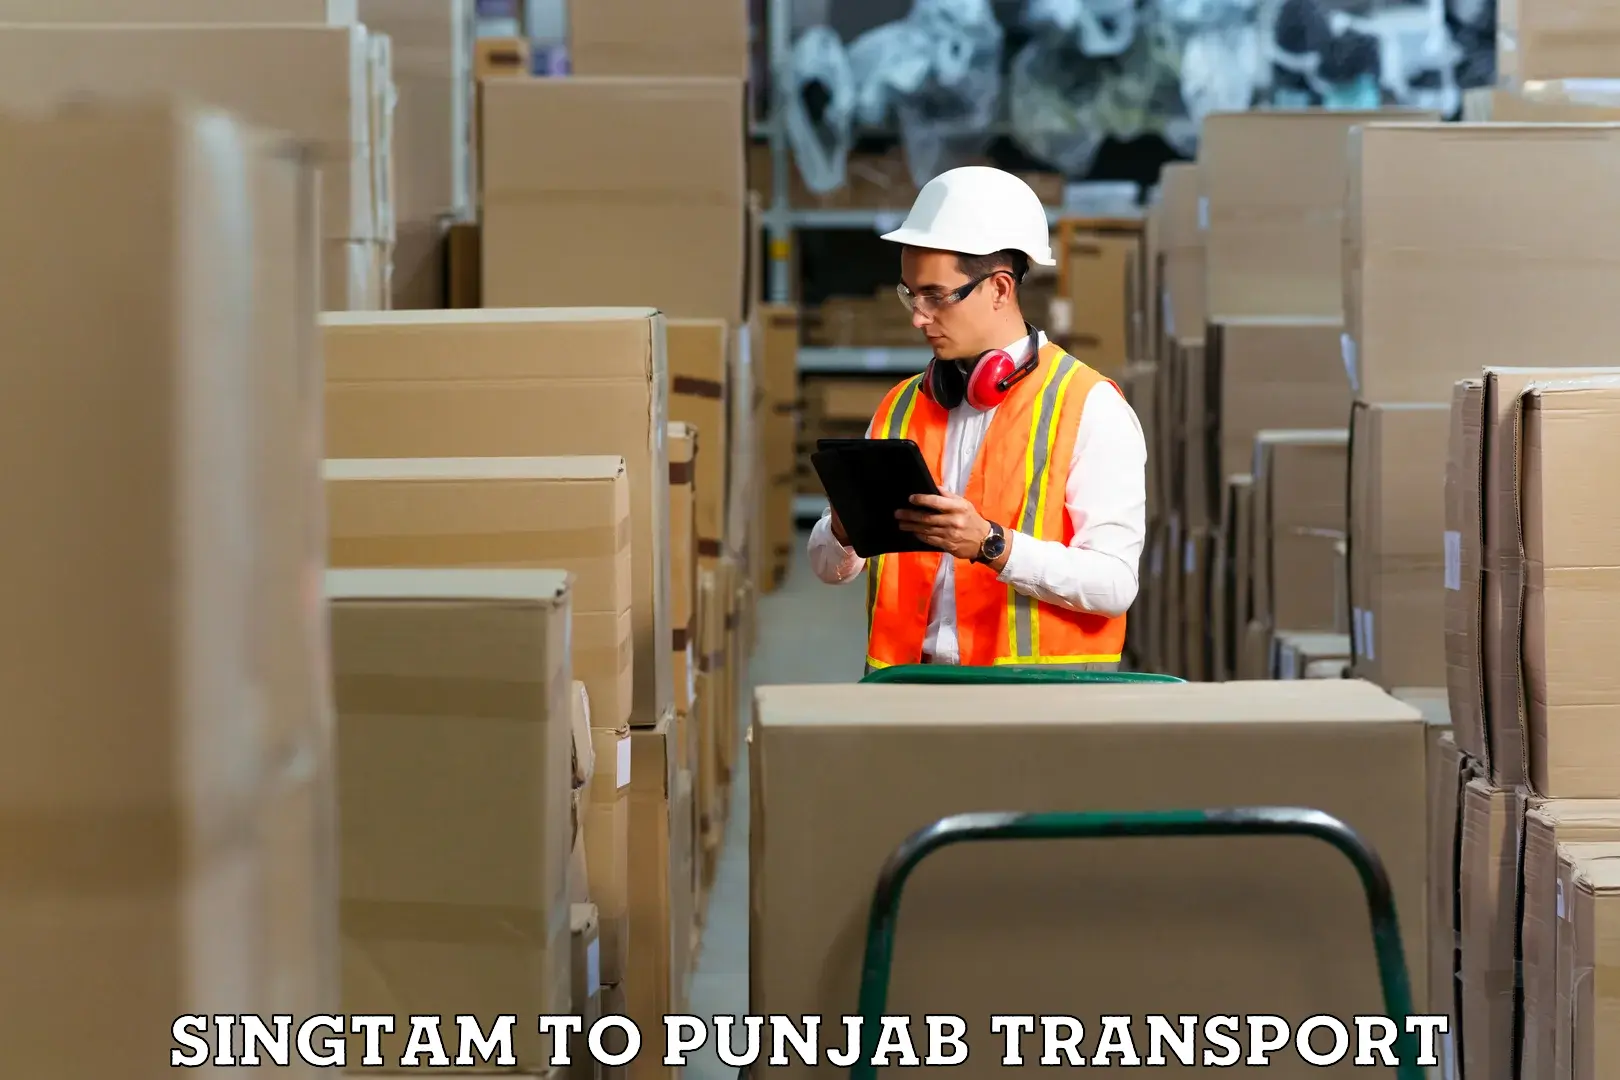 Bike shipping service Singtam to Punjab